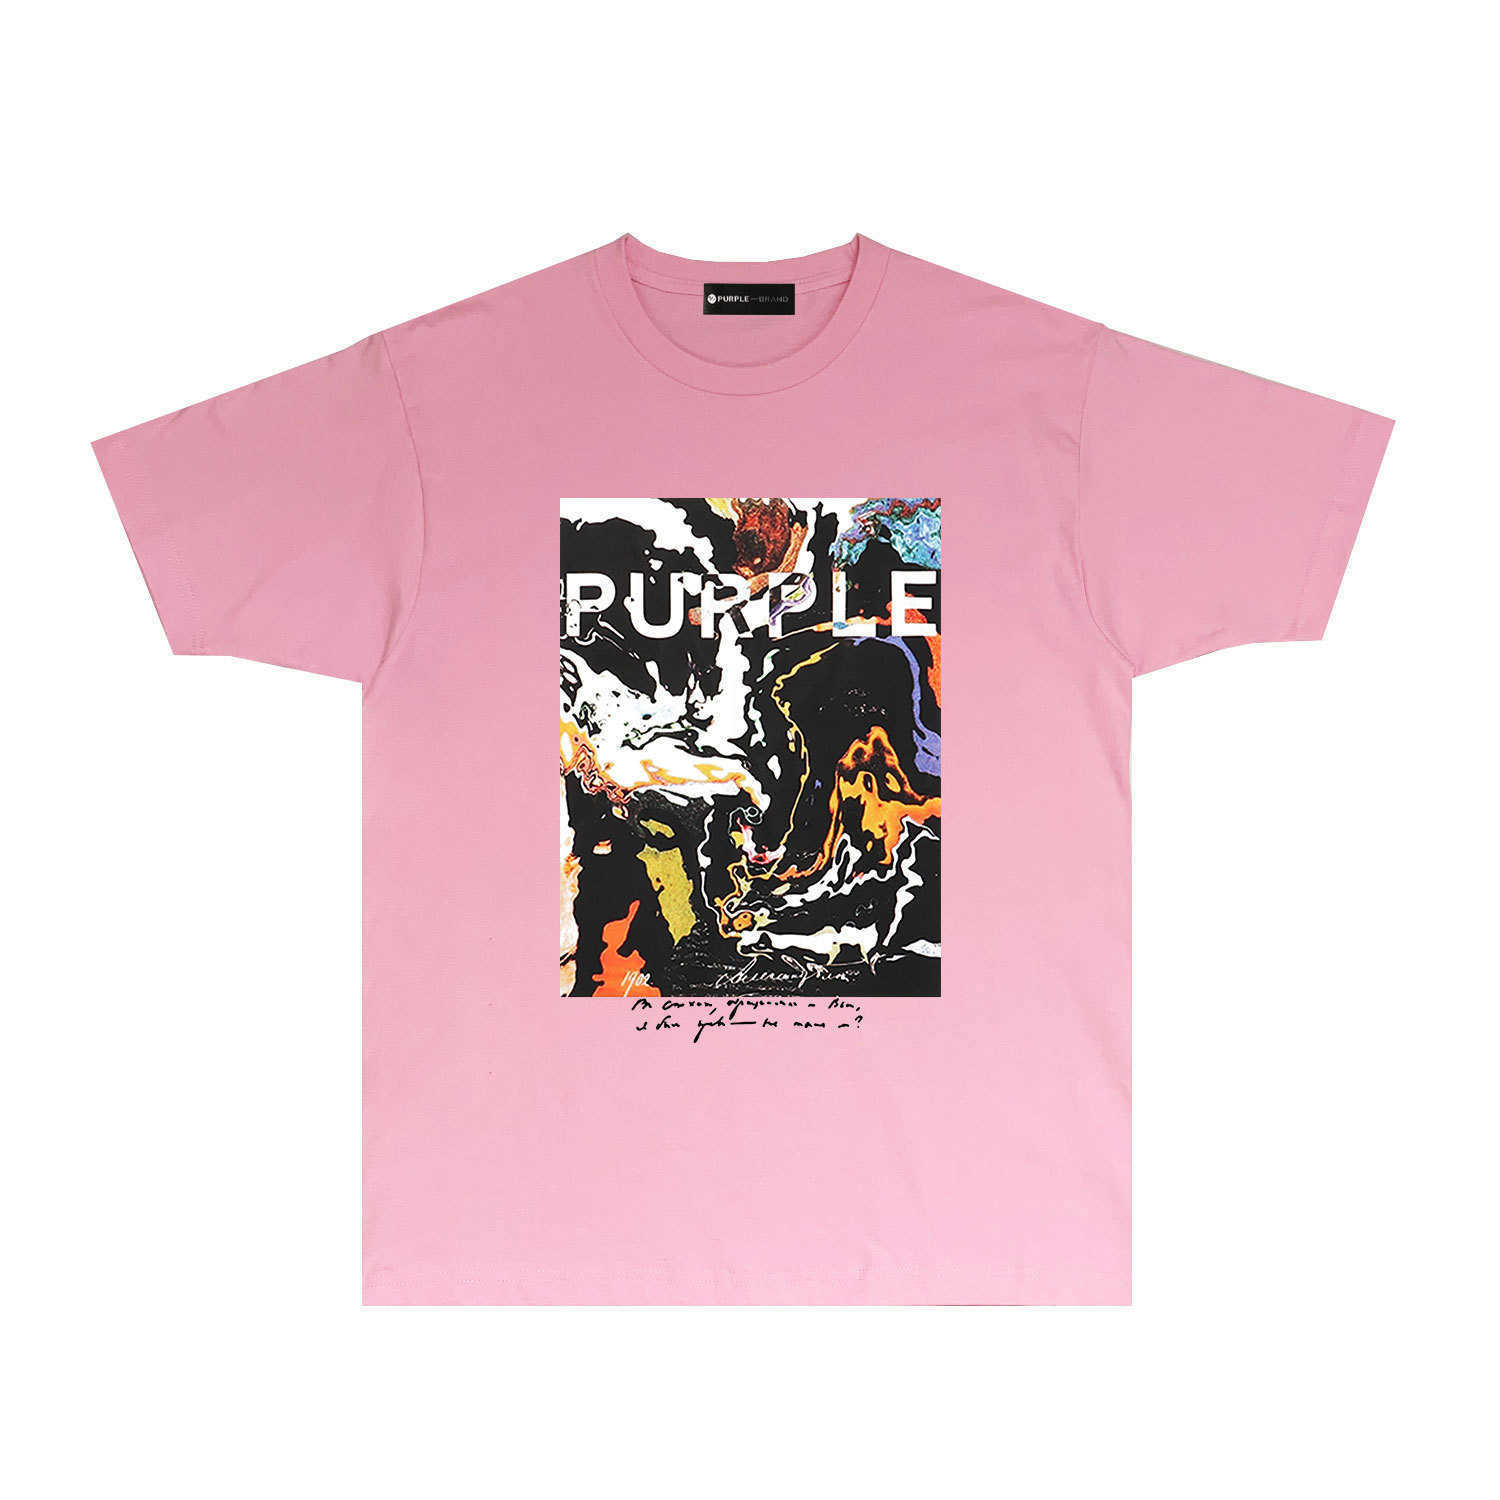 Długotrwałe modne marki fioletowa marka T-shirt z krótkim rękawem koszulka koszulka